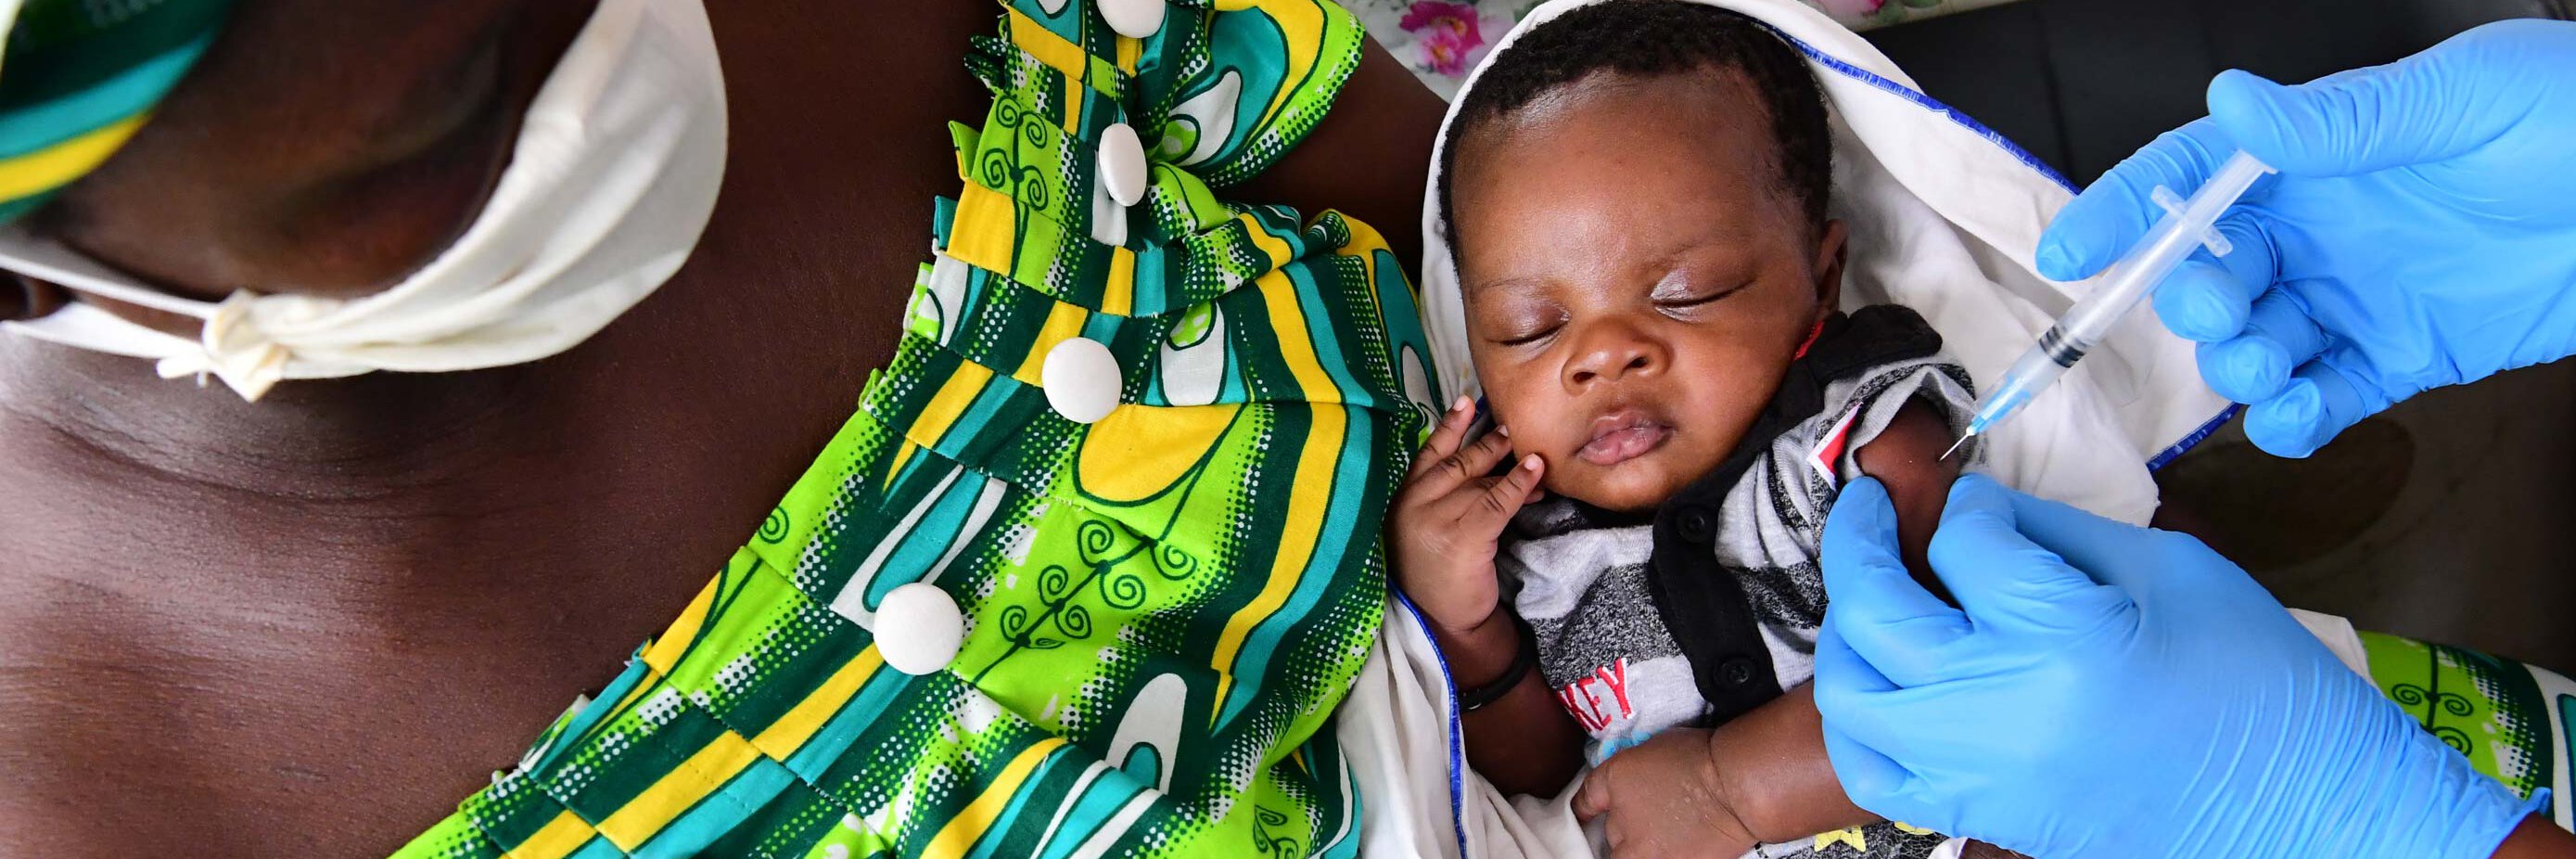 Baby an der Elfenbeinküste wird geimpft